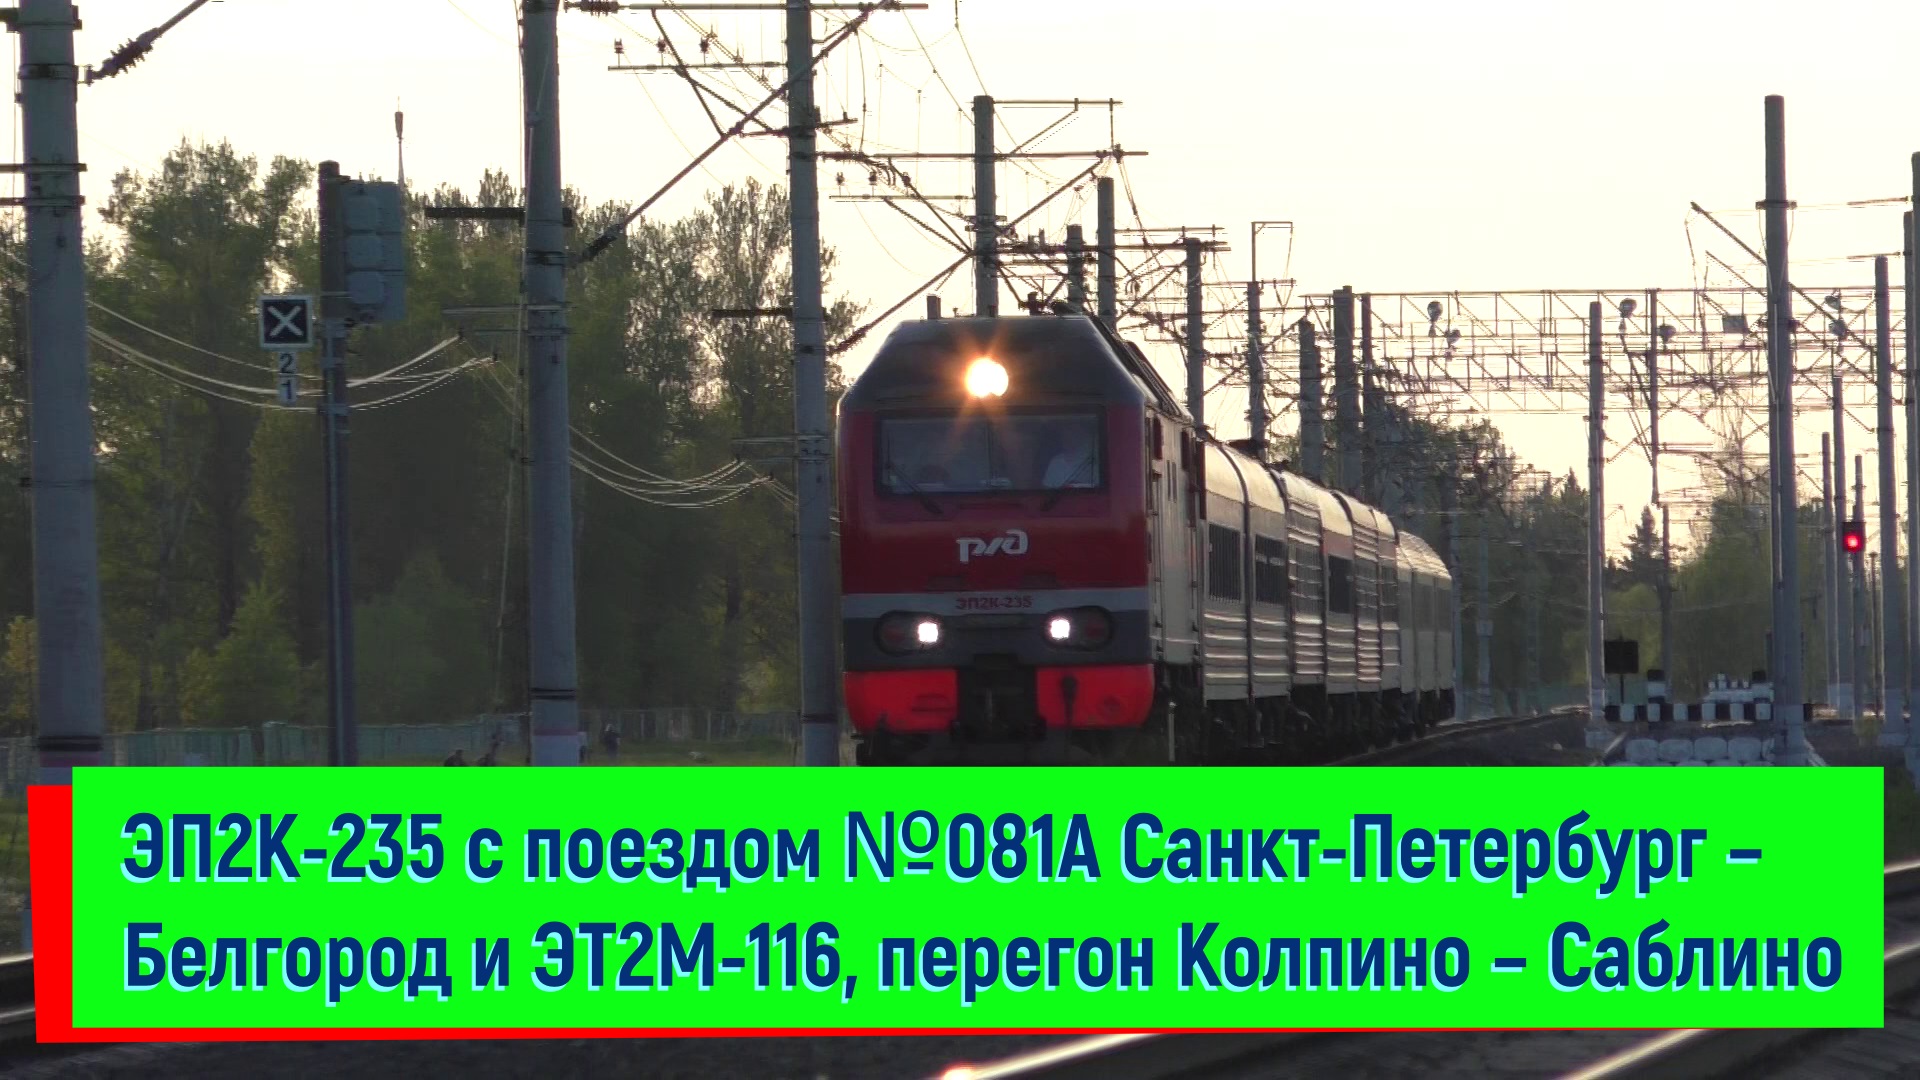 ЭП2К-235 (Санкт-Петербург – Белгород) и ЭТ2М-116, перегон Колпино – Саблино | EP2K-235 and ET2M-116